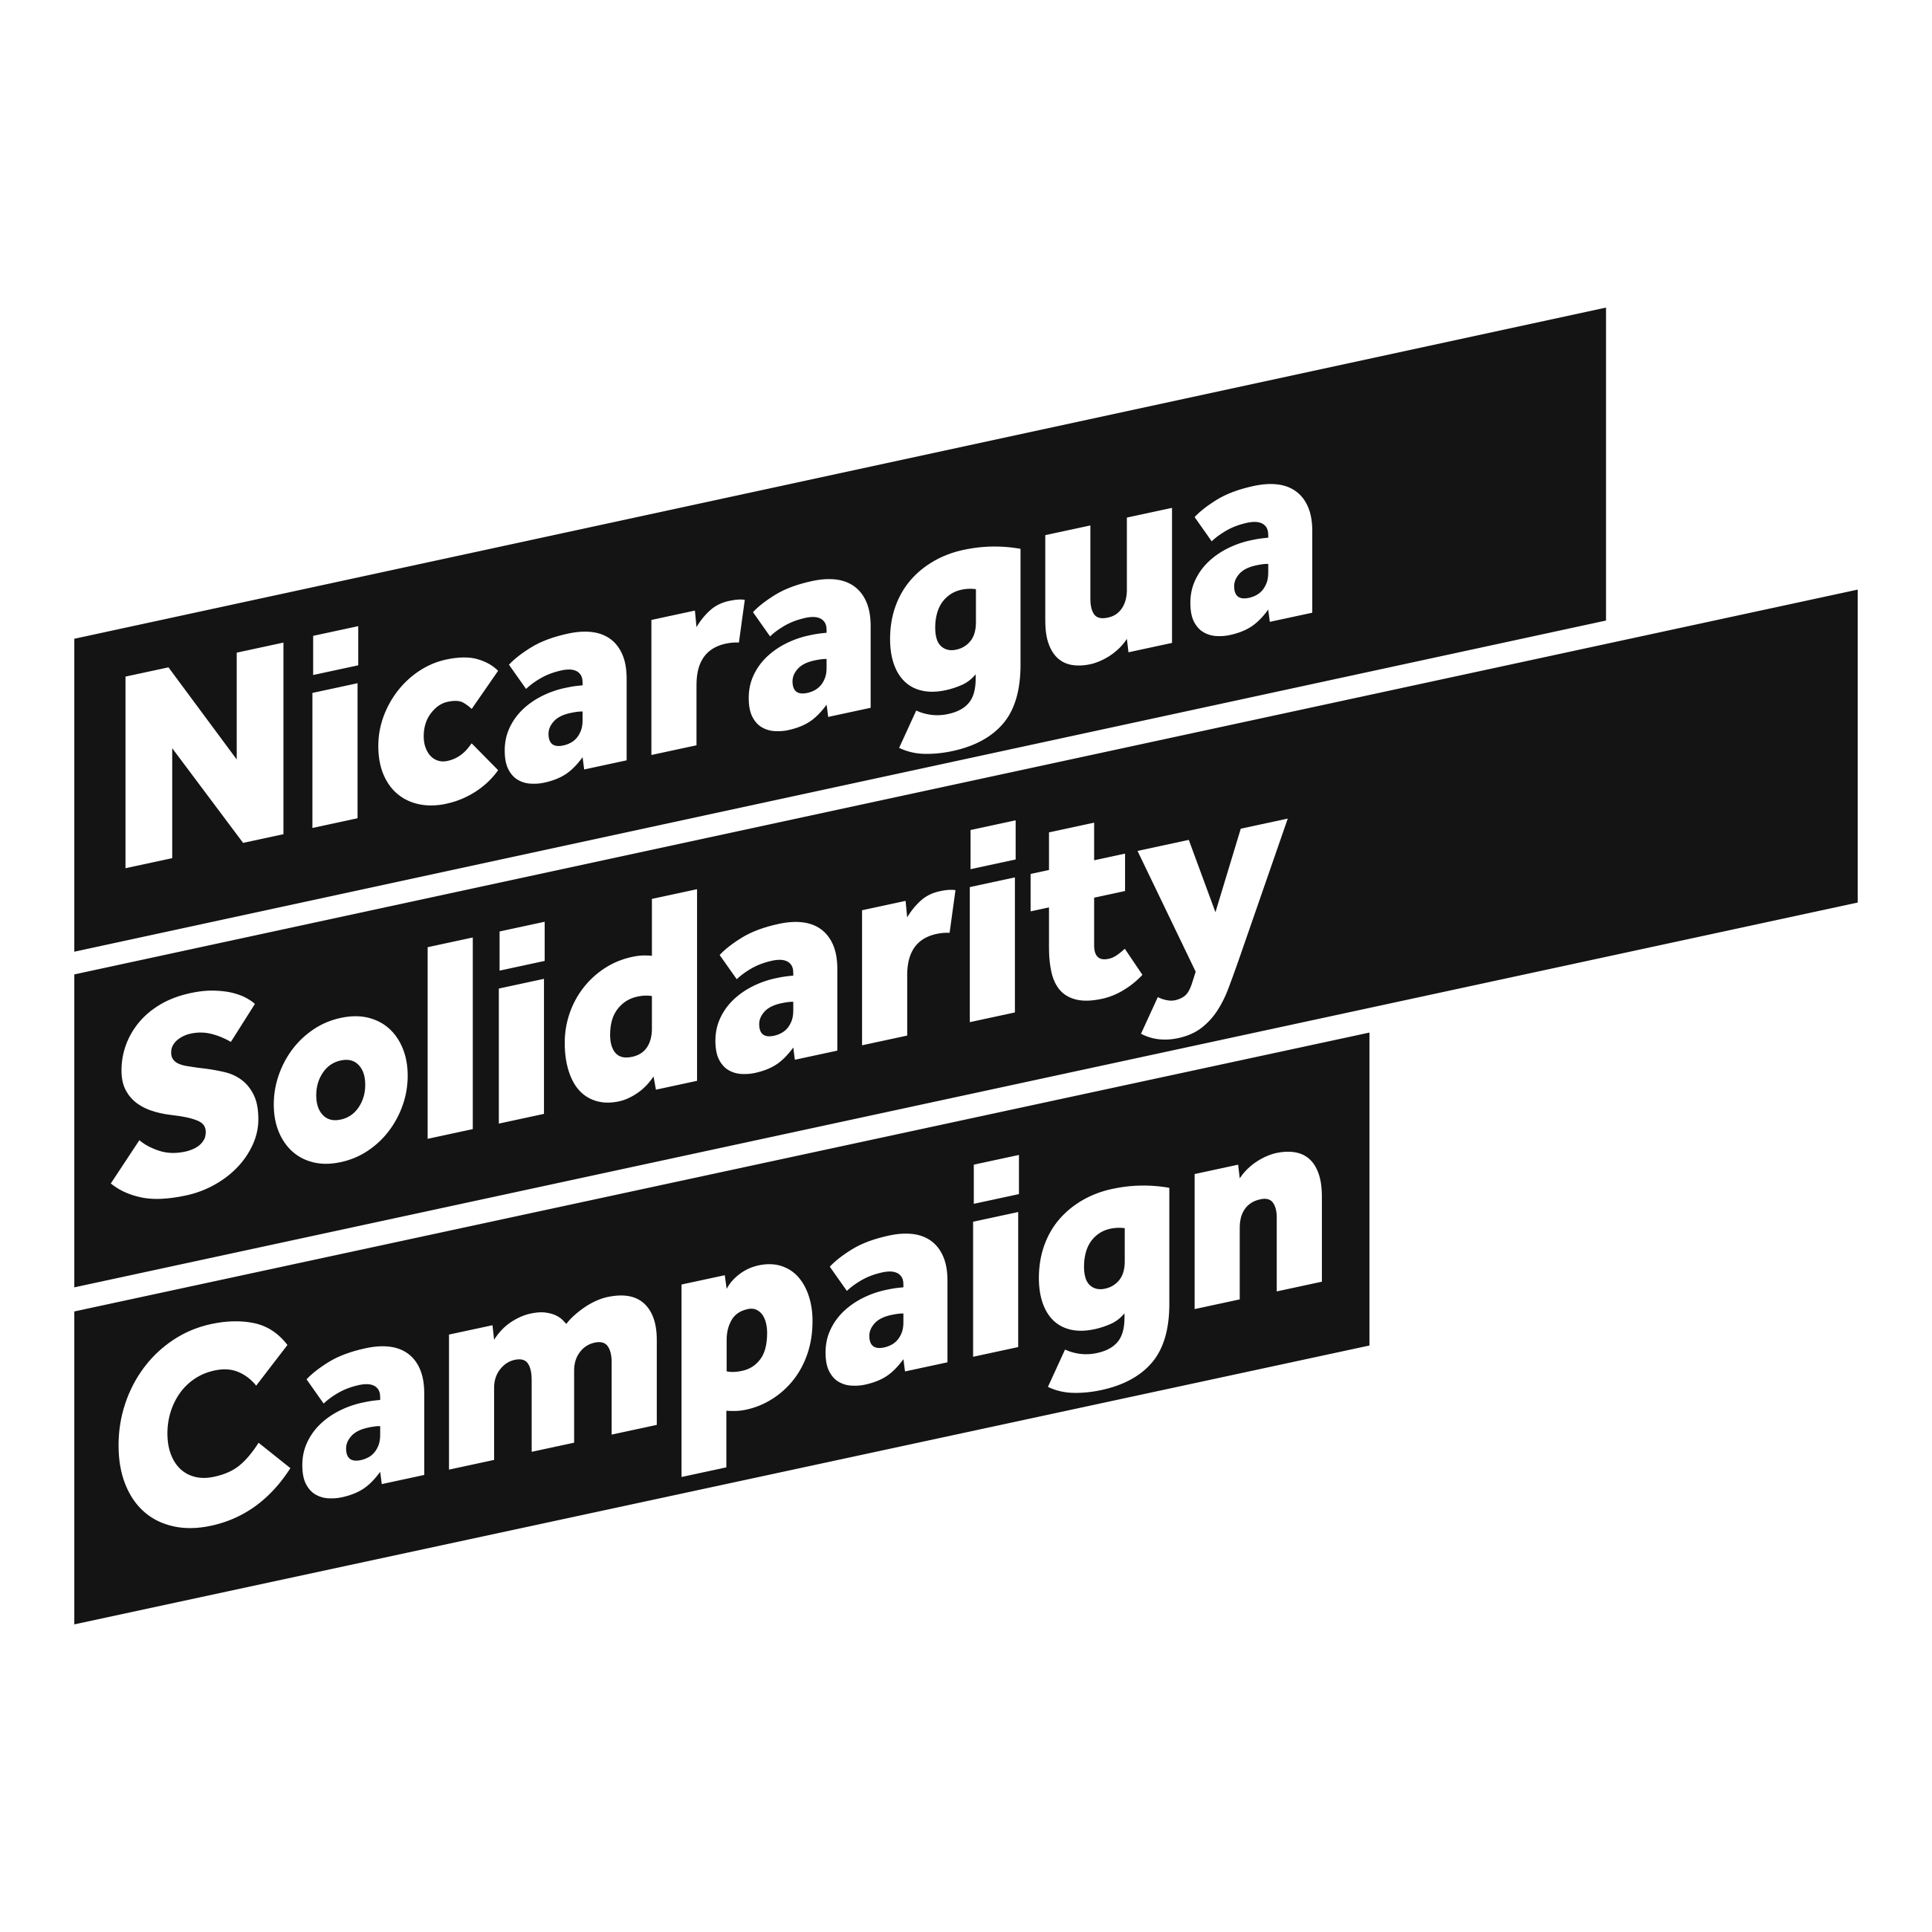 Nicaragua Solidarity Campaign